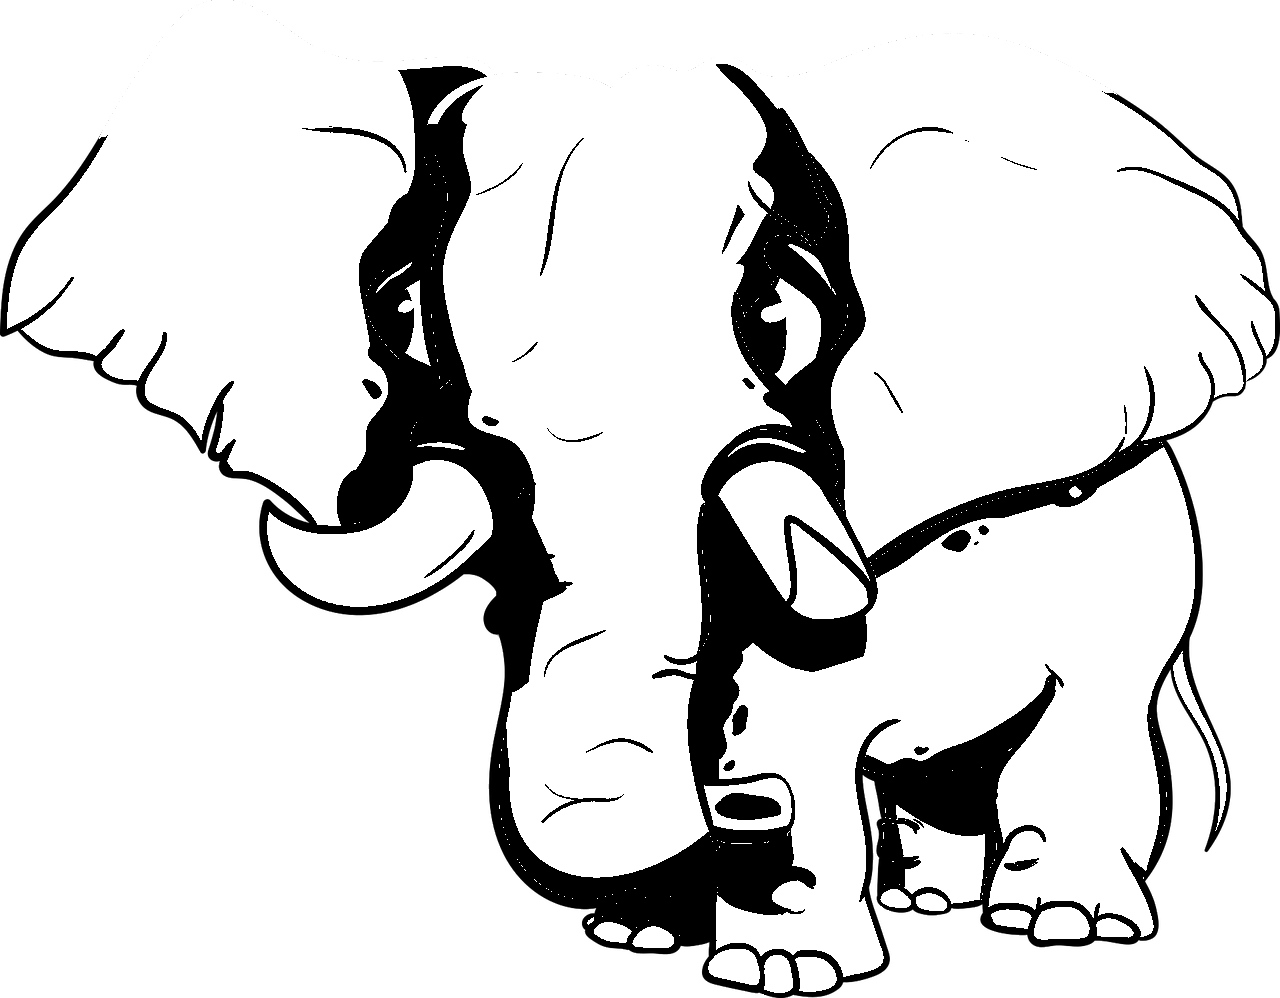 Disegno da colorare di elefante stile cartoon umoristico